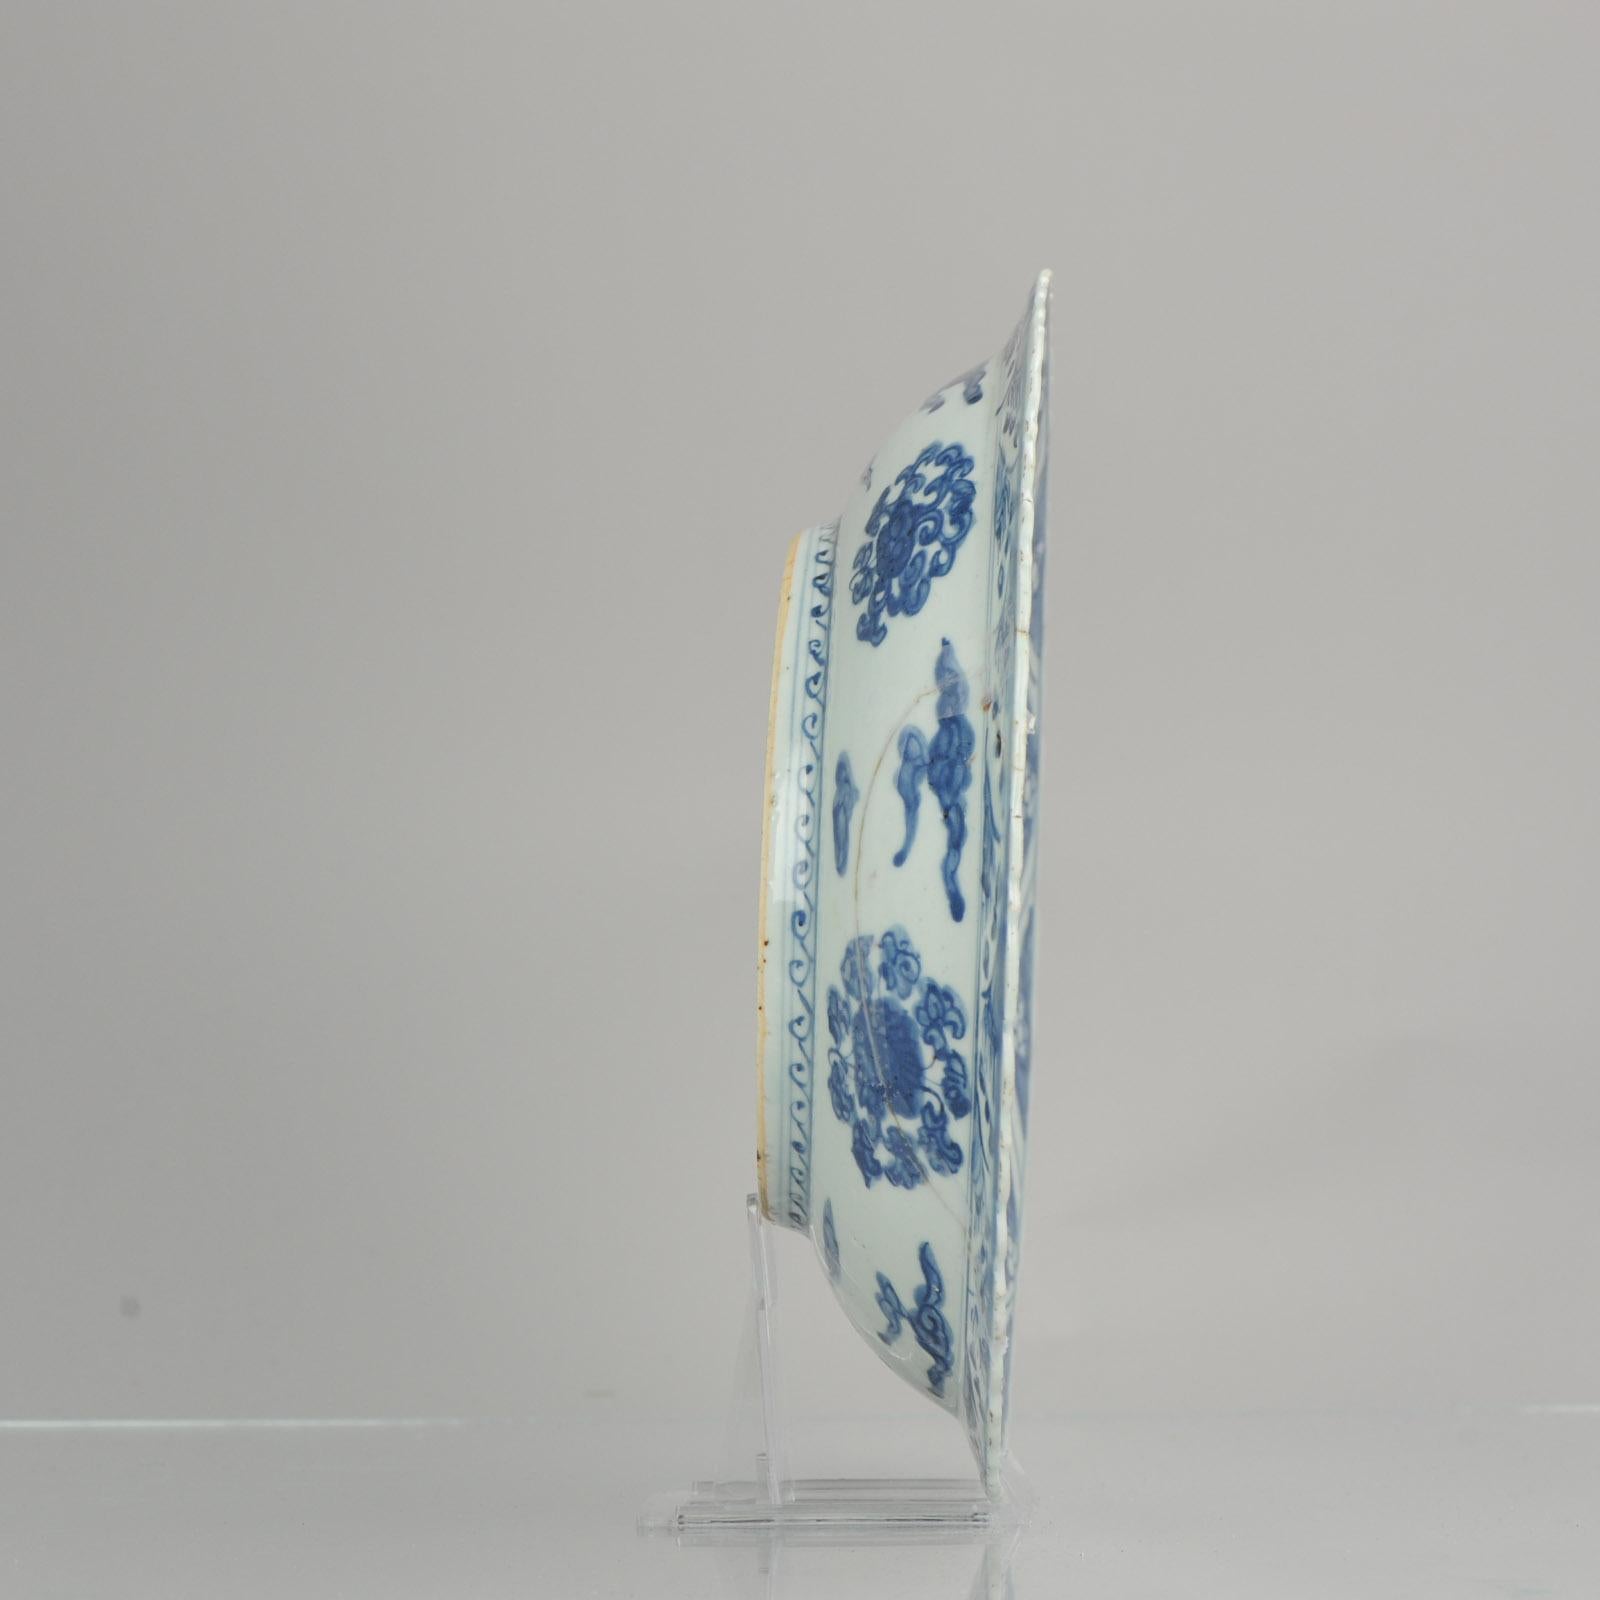 Großes und sehr schönes blau-weißes Ladegeschirr aus der Ming-Zeit. Jiajing. Absolut cooler Artikel markiert Ming

Zusätzliche Informationen:
MATERIAL: Porzellan
Zeitraum: 17. Jahrhundert Qing (1661 - 1912)
Zustand: Restauriertes Stück, plus 1